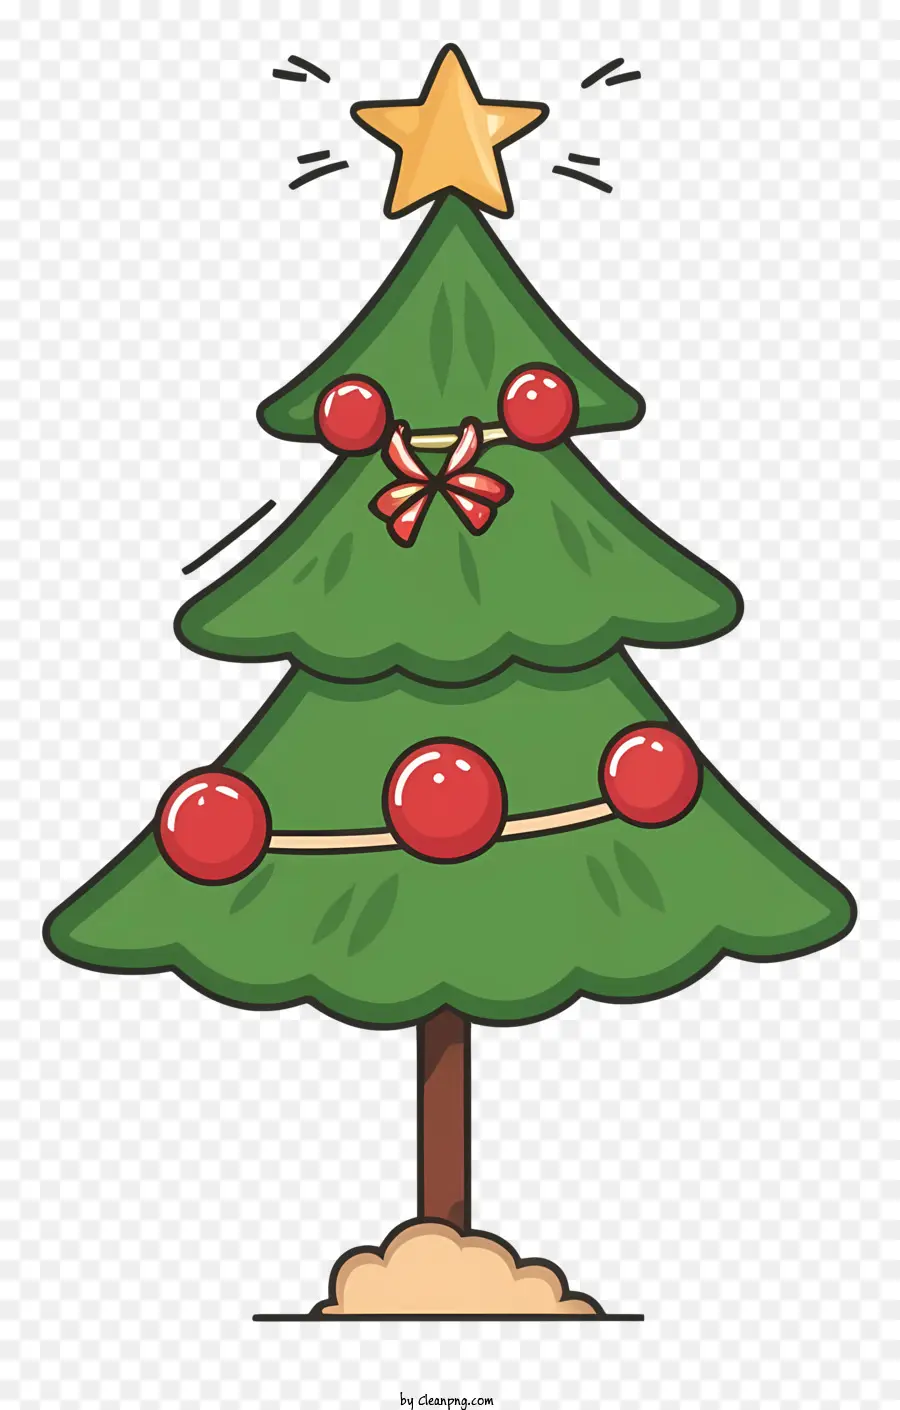 Desenho Animado Da árvore De Natal，Enfeites De árvore De Natal PNG